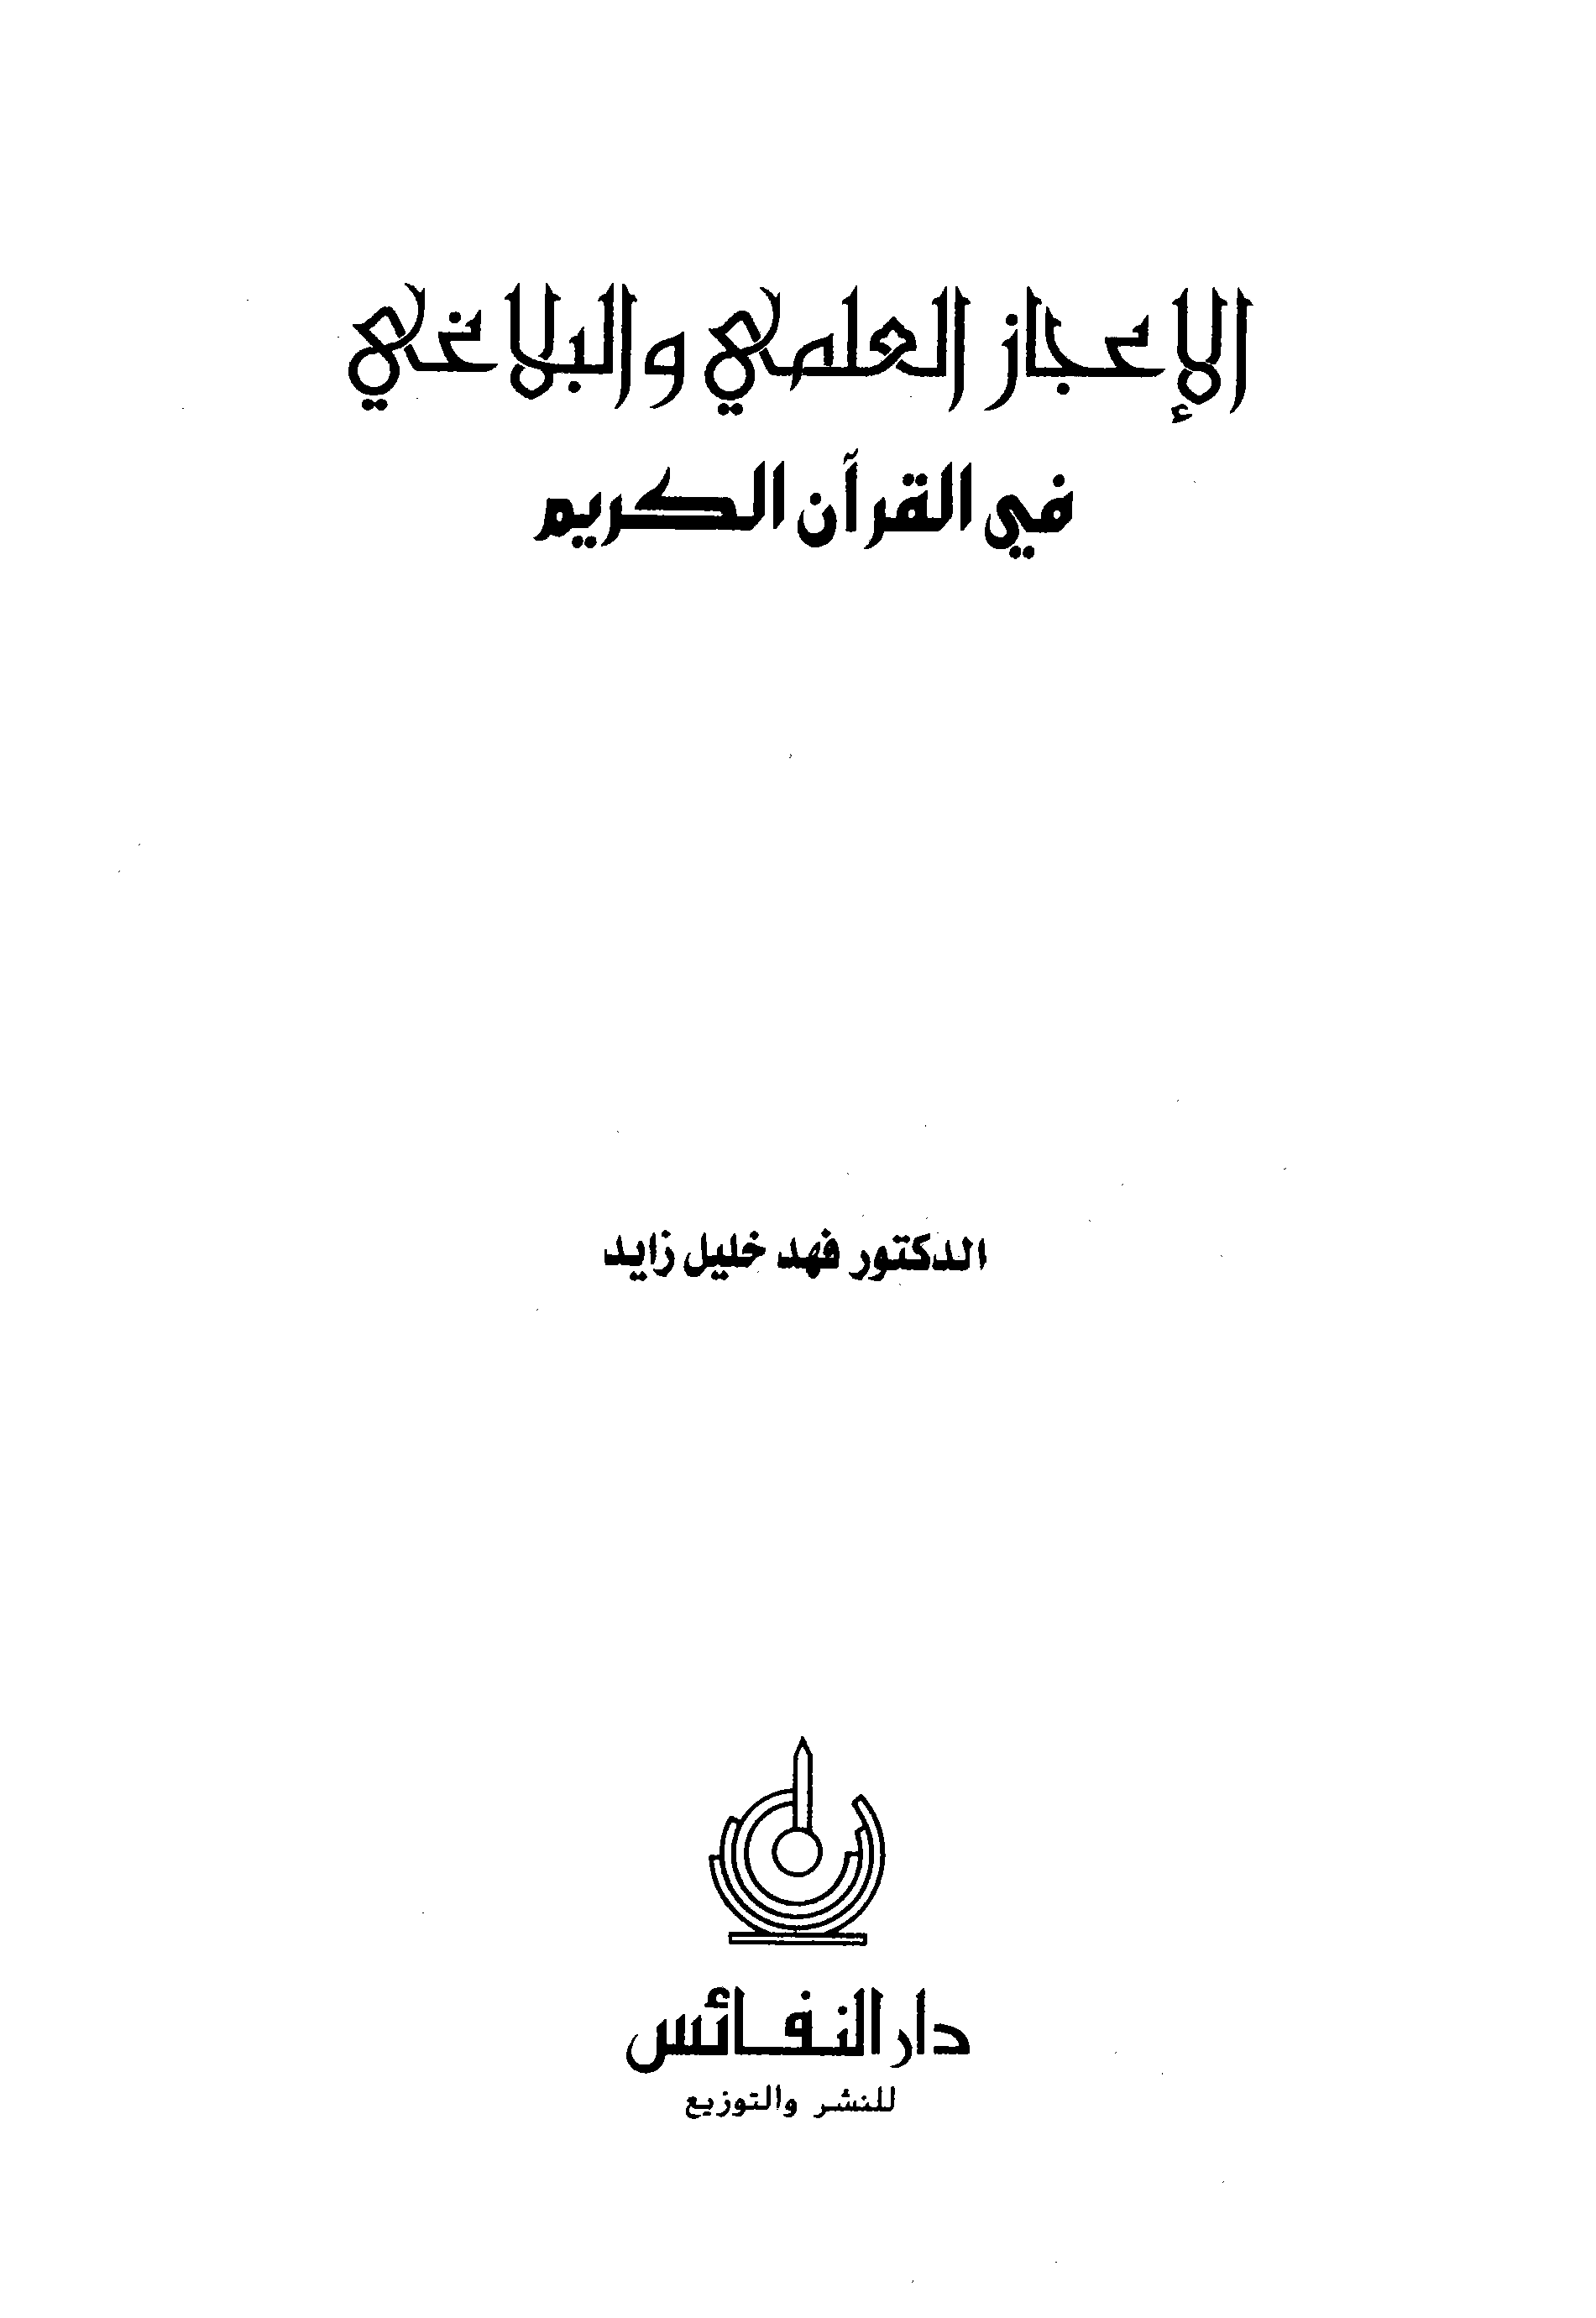 الإعجاز العلمي والبلاغي في القرآن الكريم